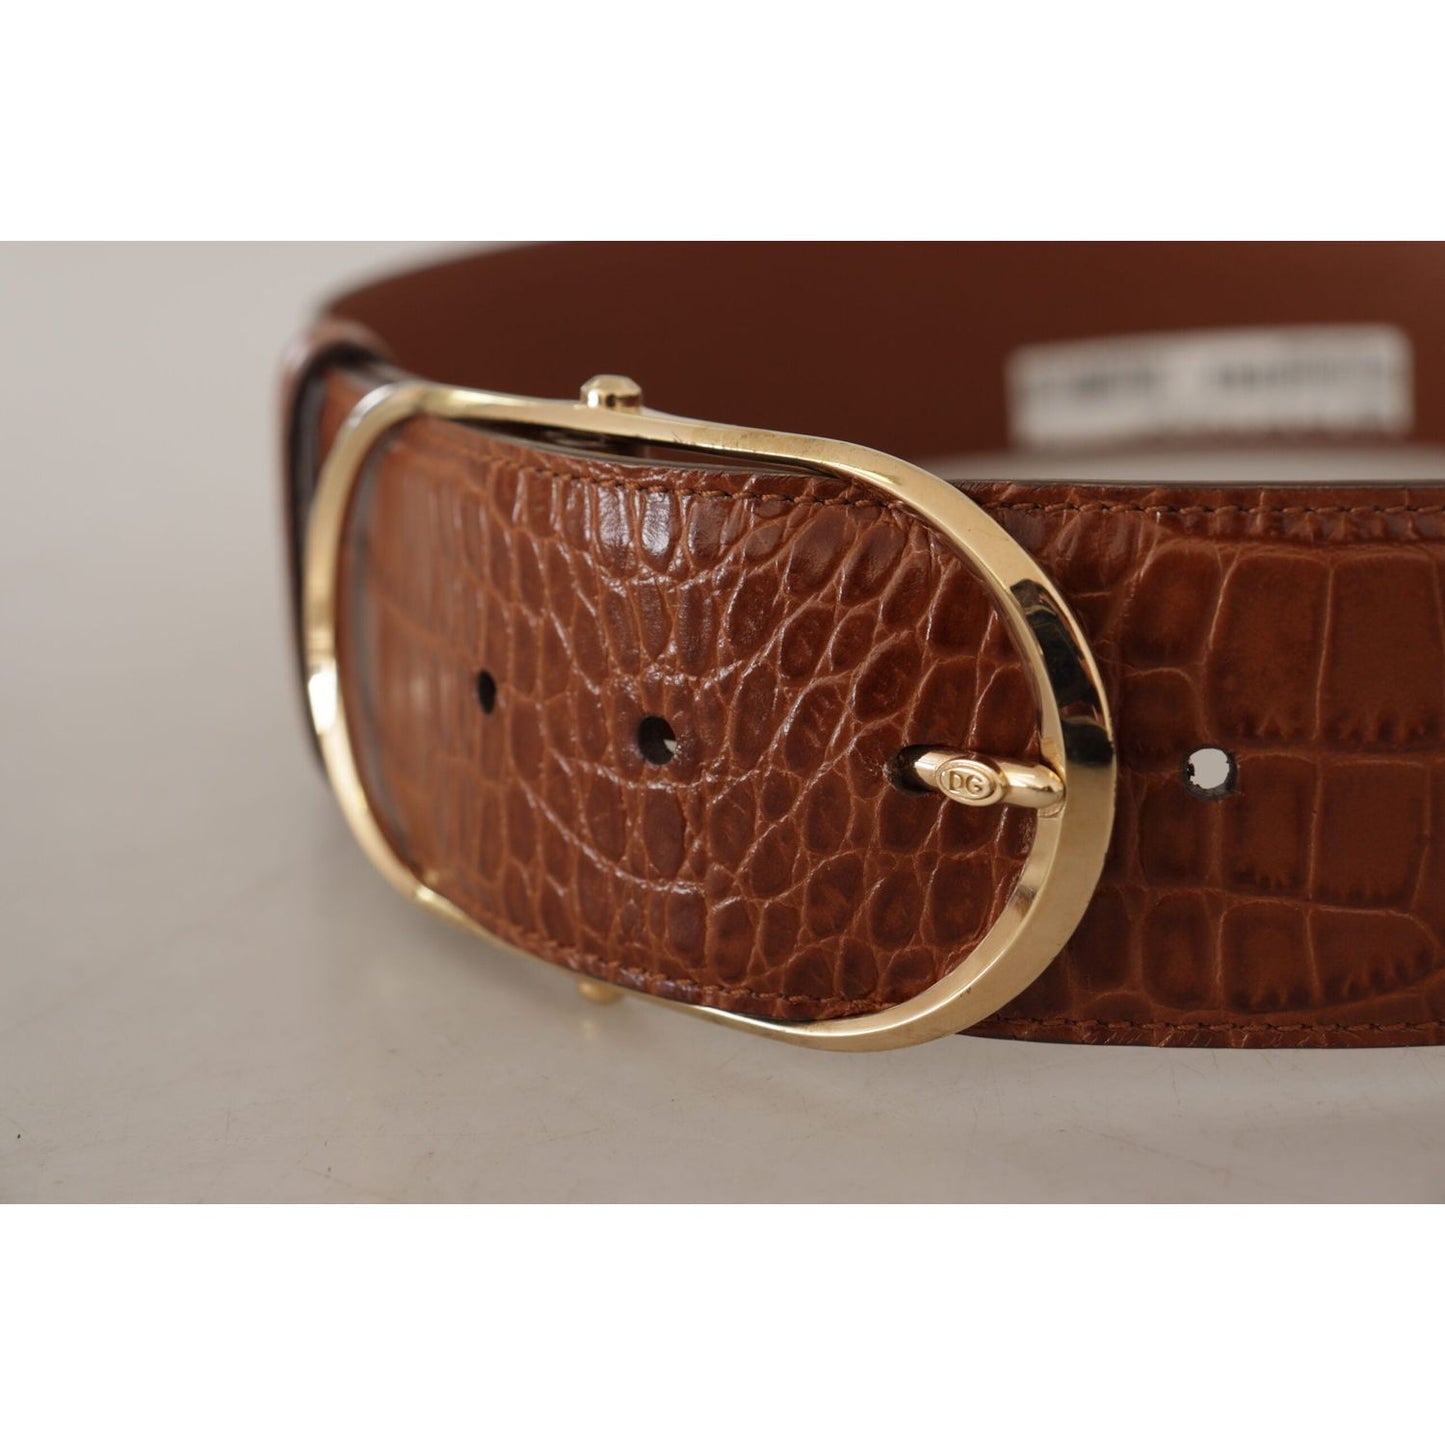 Dolce & Gabbana Enchanting Engraved Logo Leather Belt brown-wide-waist-leather-gold-oval-metal-buckle-belt